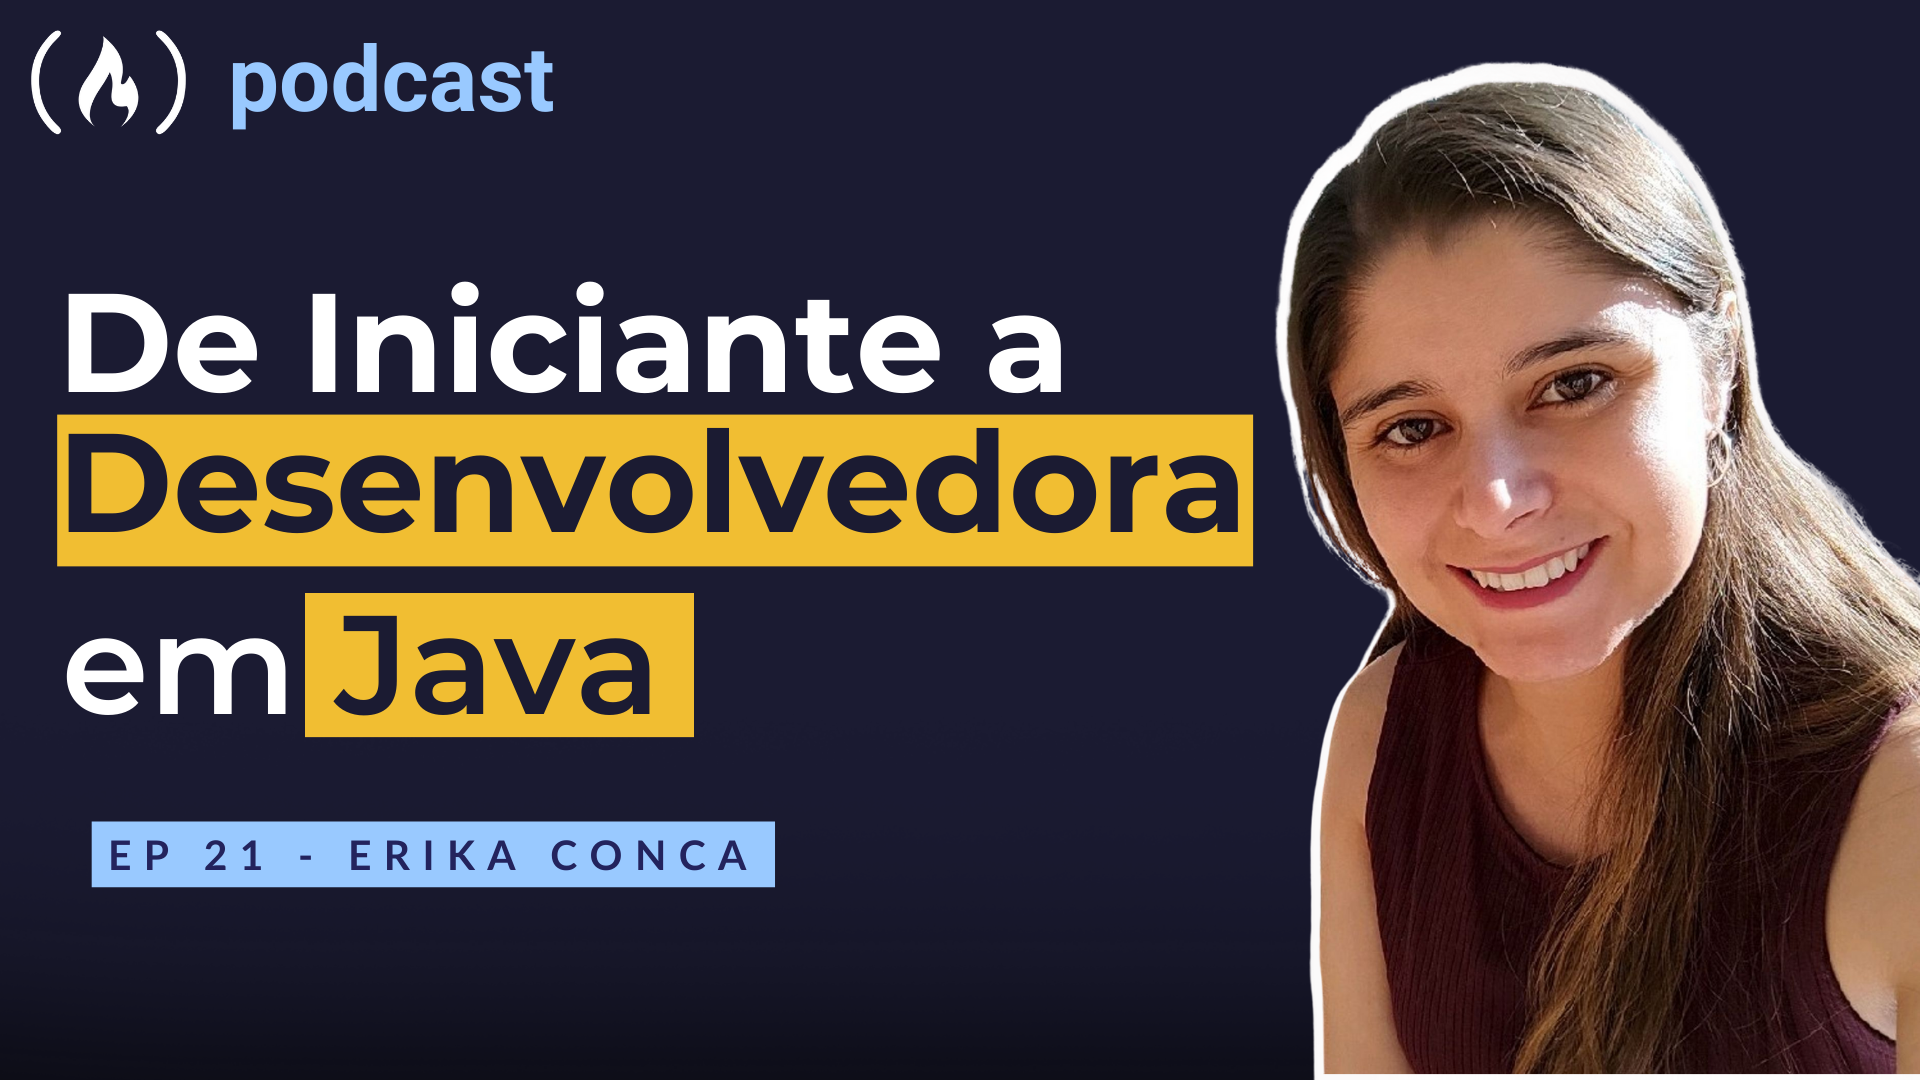 Ep. 21 Erika Conca - De iniciante a desenvolvedora em Java